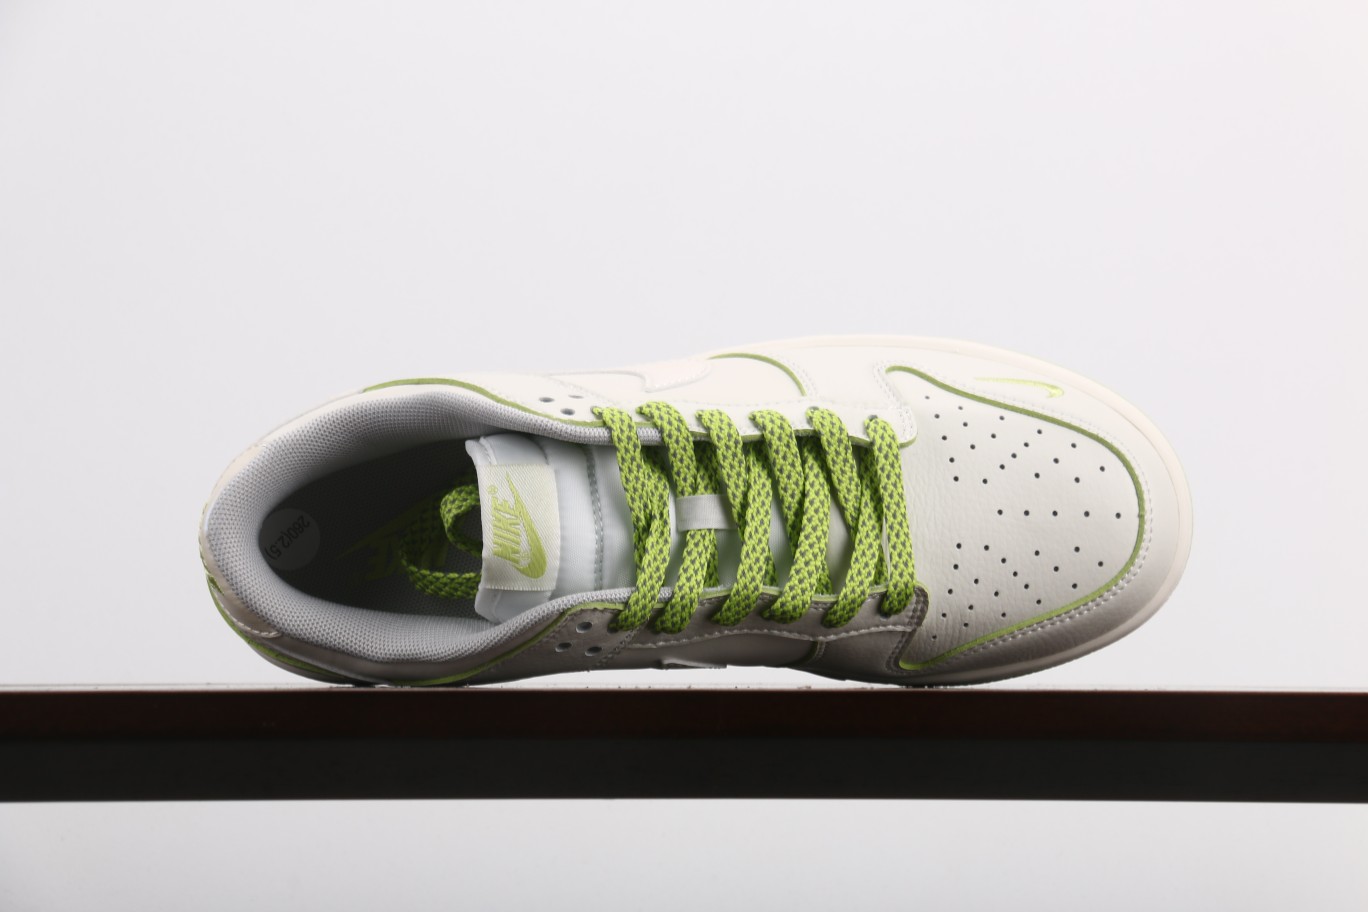 NikeDunkLow珠光苹果绿此款鞋采用近几年比较流行的版型设计外观时尚大气鞋底采用耐磨的材质穿上它让